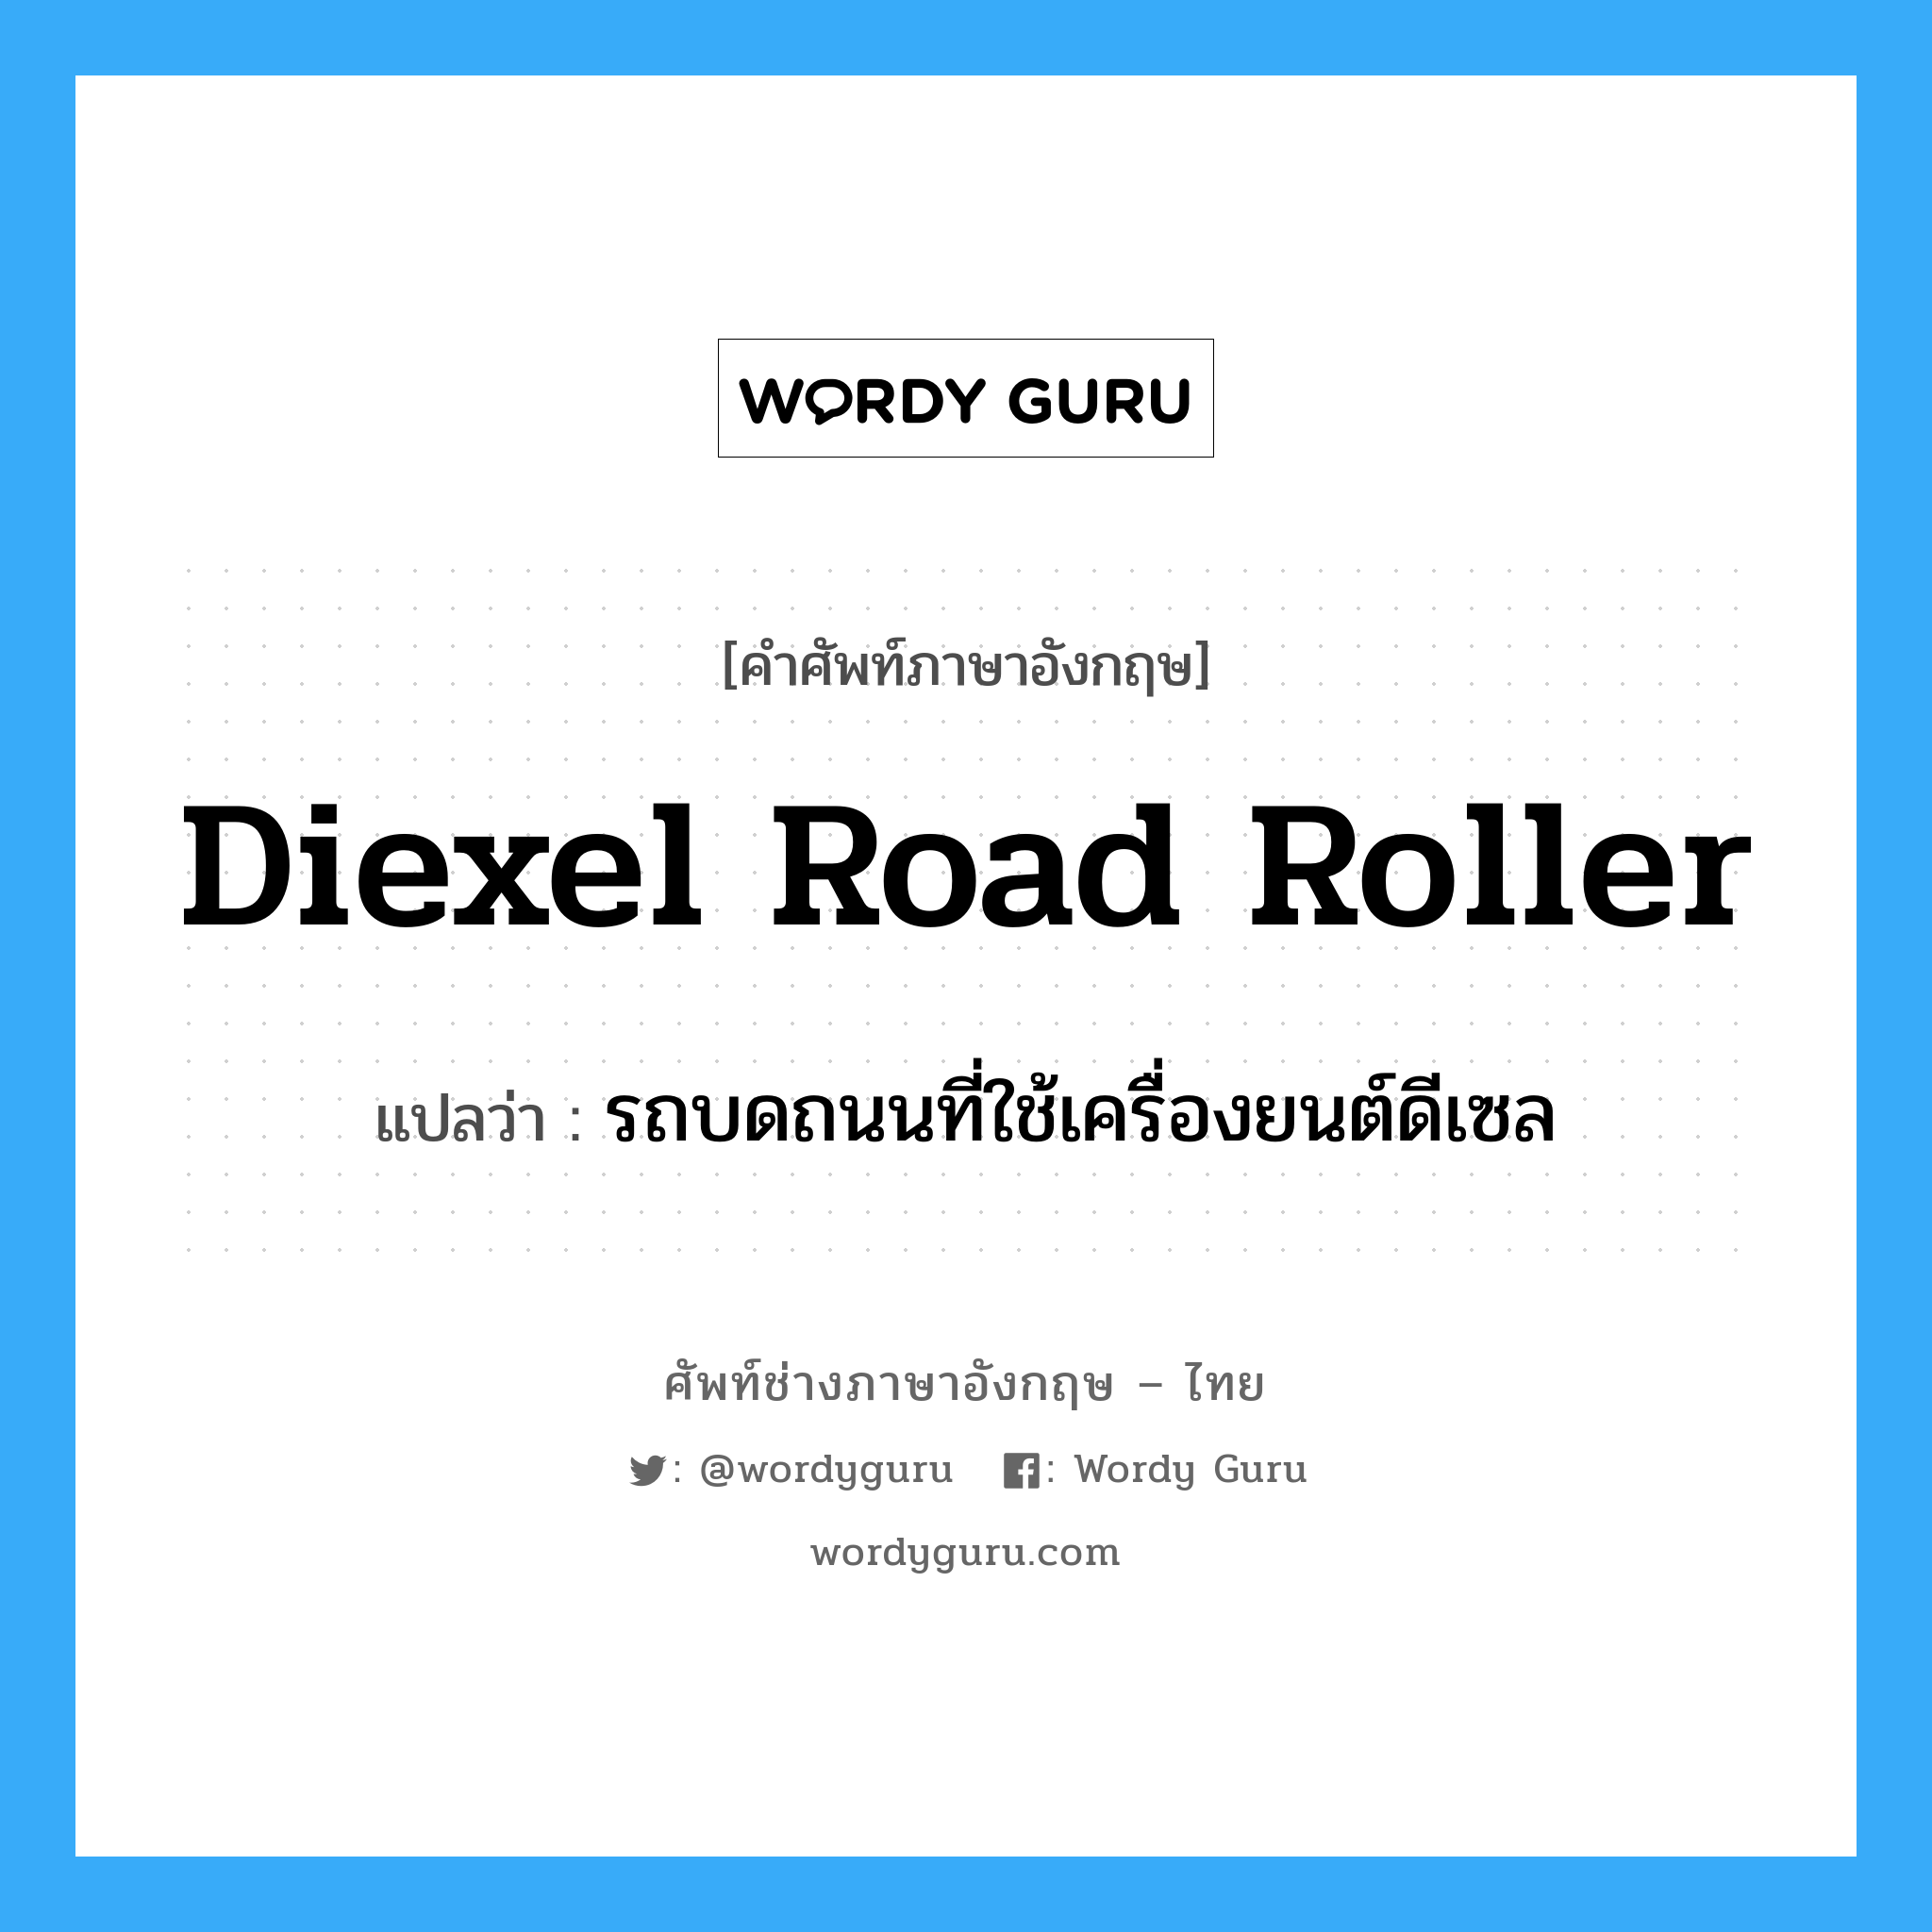 diexel road roller แปลว่า?, คำศัพท์ช่างภาษาอังกฤษ - ไทย diexel road roller คำศัพท์ภาษาอังกฤษ diexel road roller แปลว่า รถบดถนนที่ใช้เครื่องยนต์ดีเซล